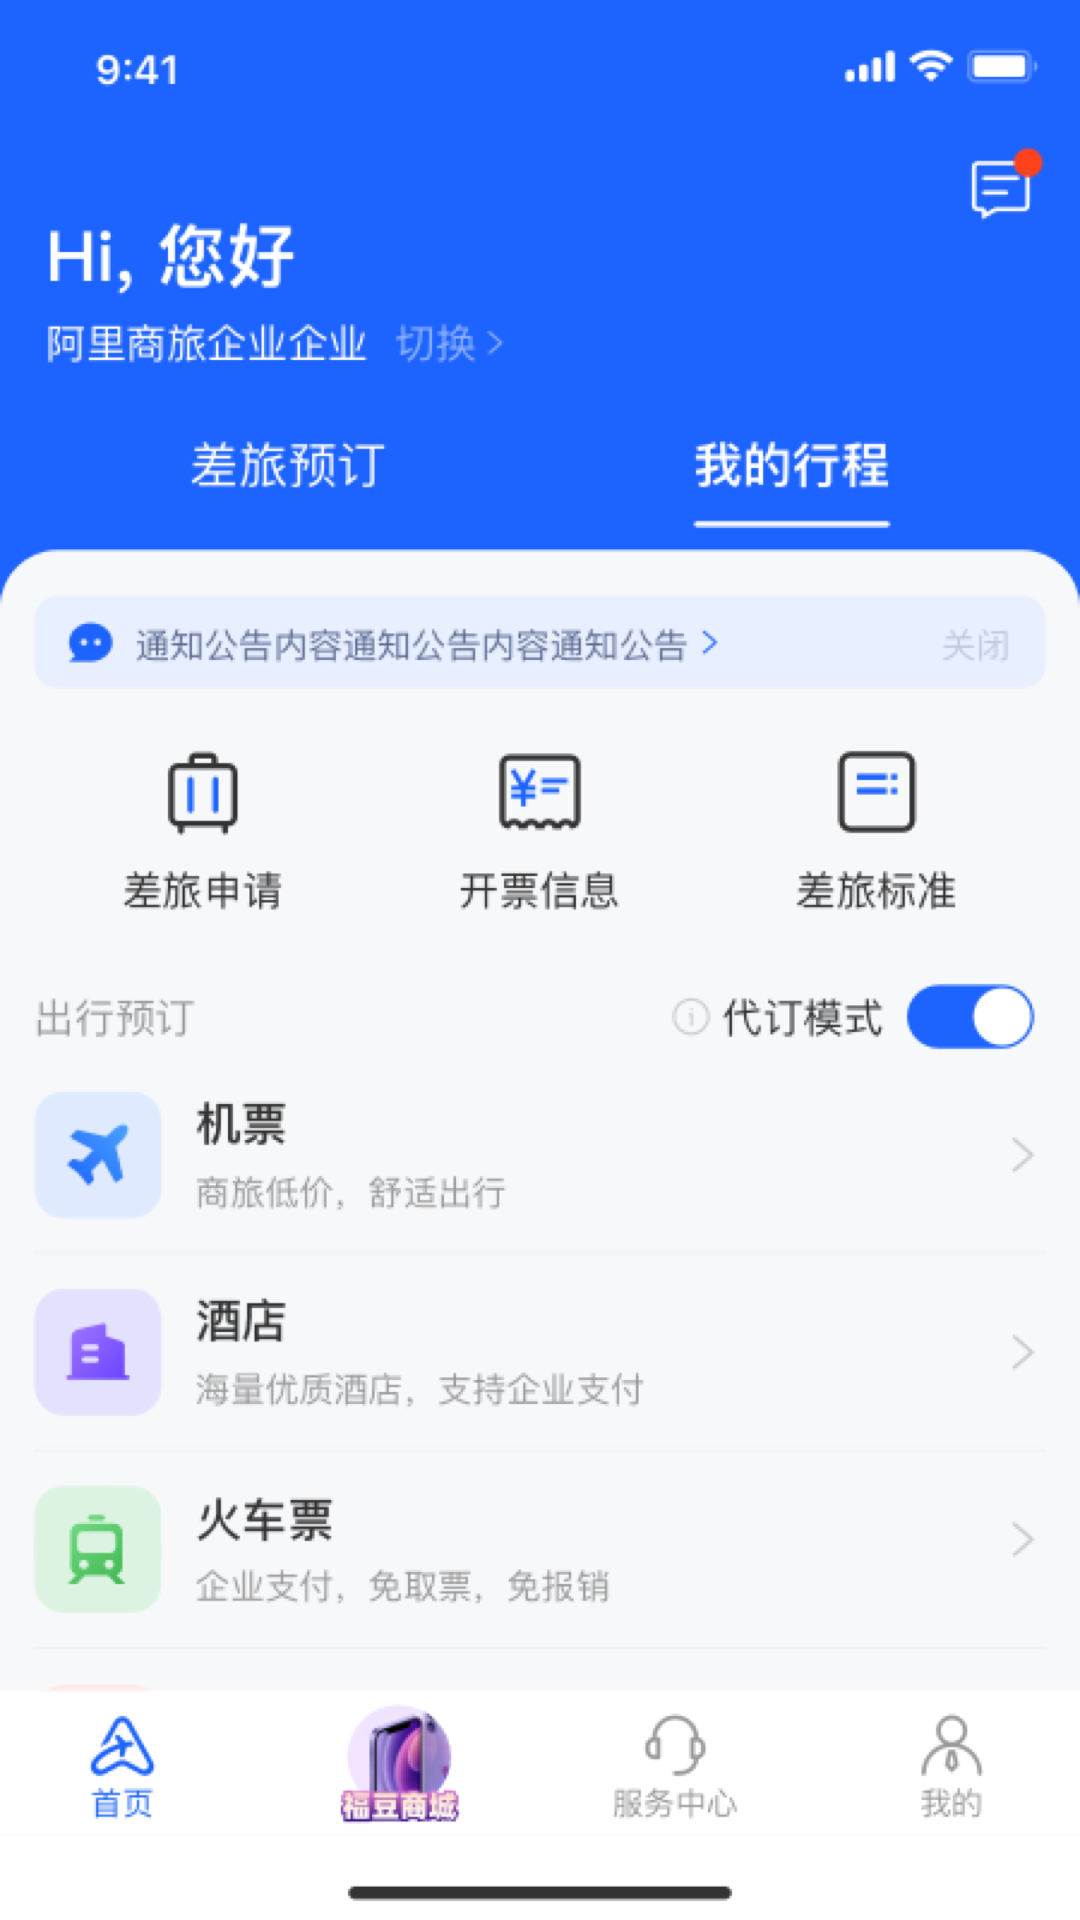 阿里商旅app 1.3.0.1021.4.0.102